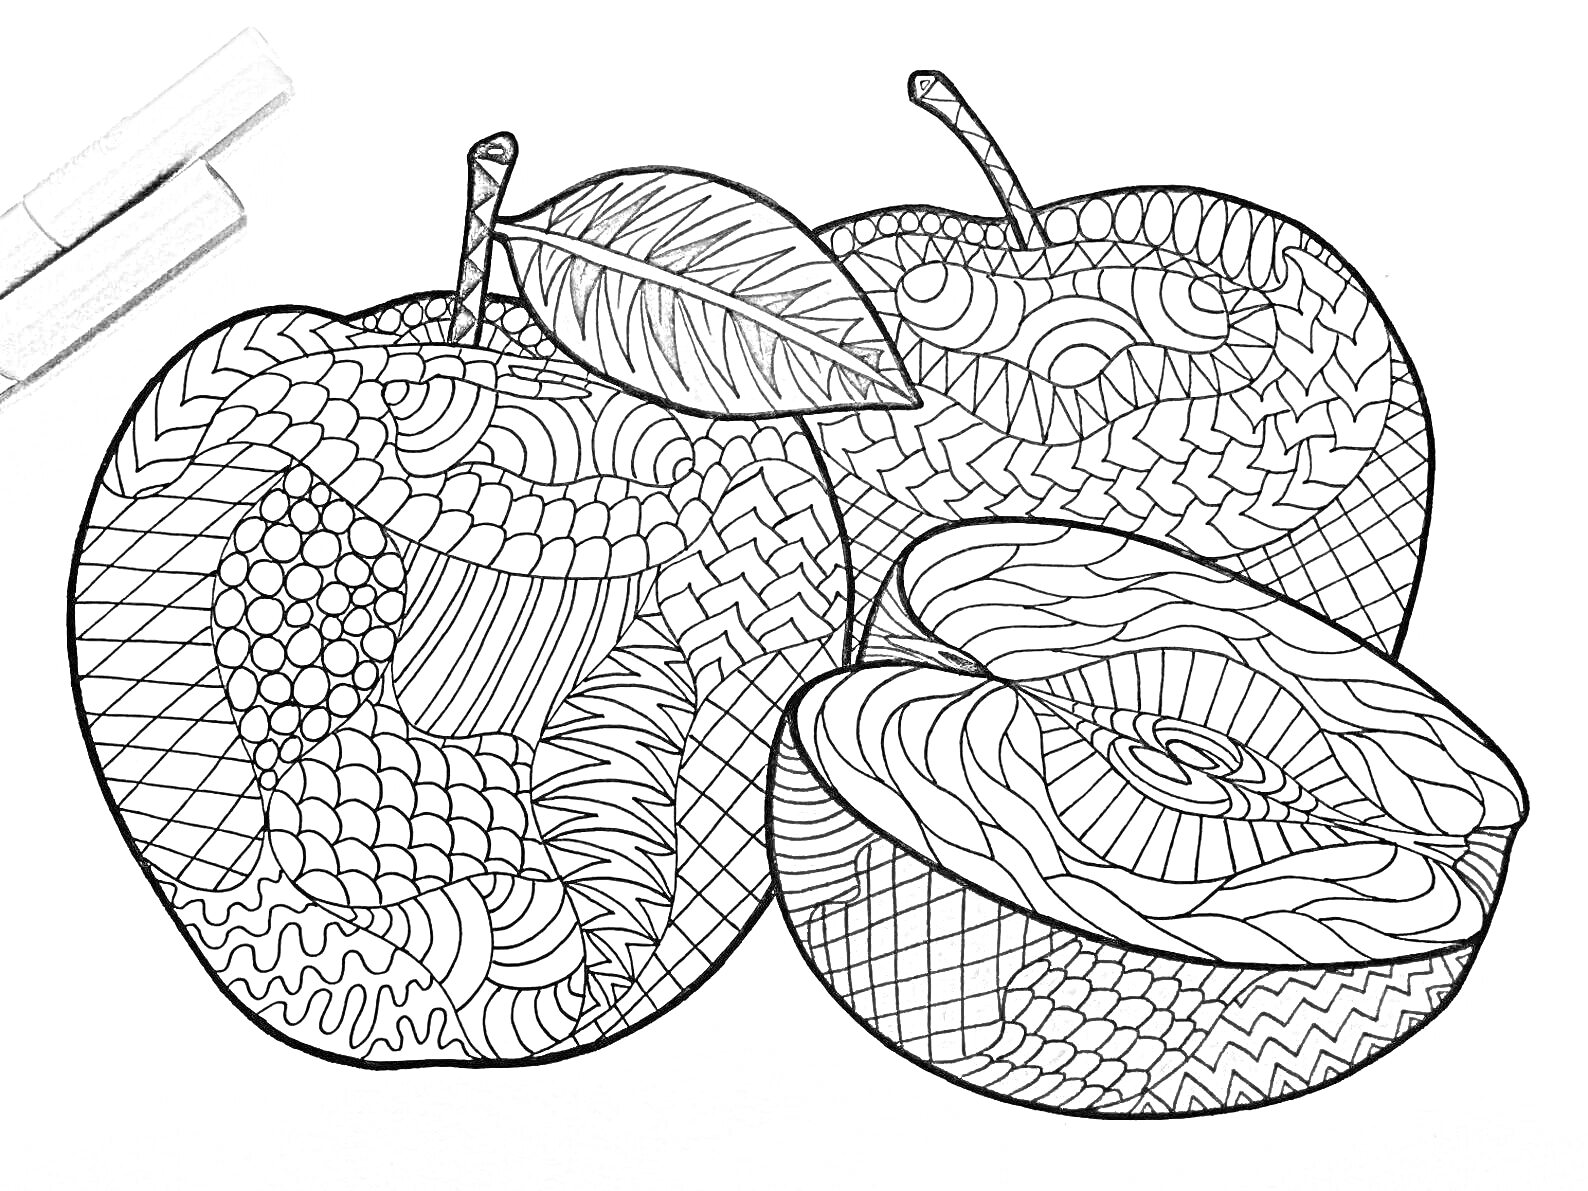 Раскраска Антистресс раскраска с яблоками - целые яблоки, яблоки с листом, нарезанные яблоки, узоры антистресс